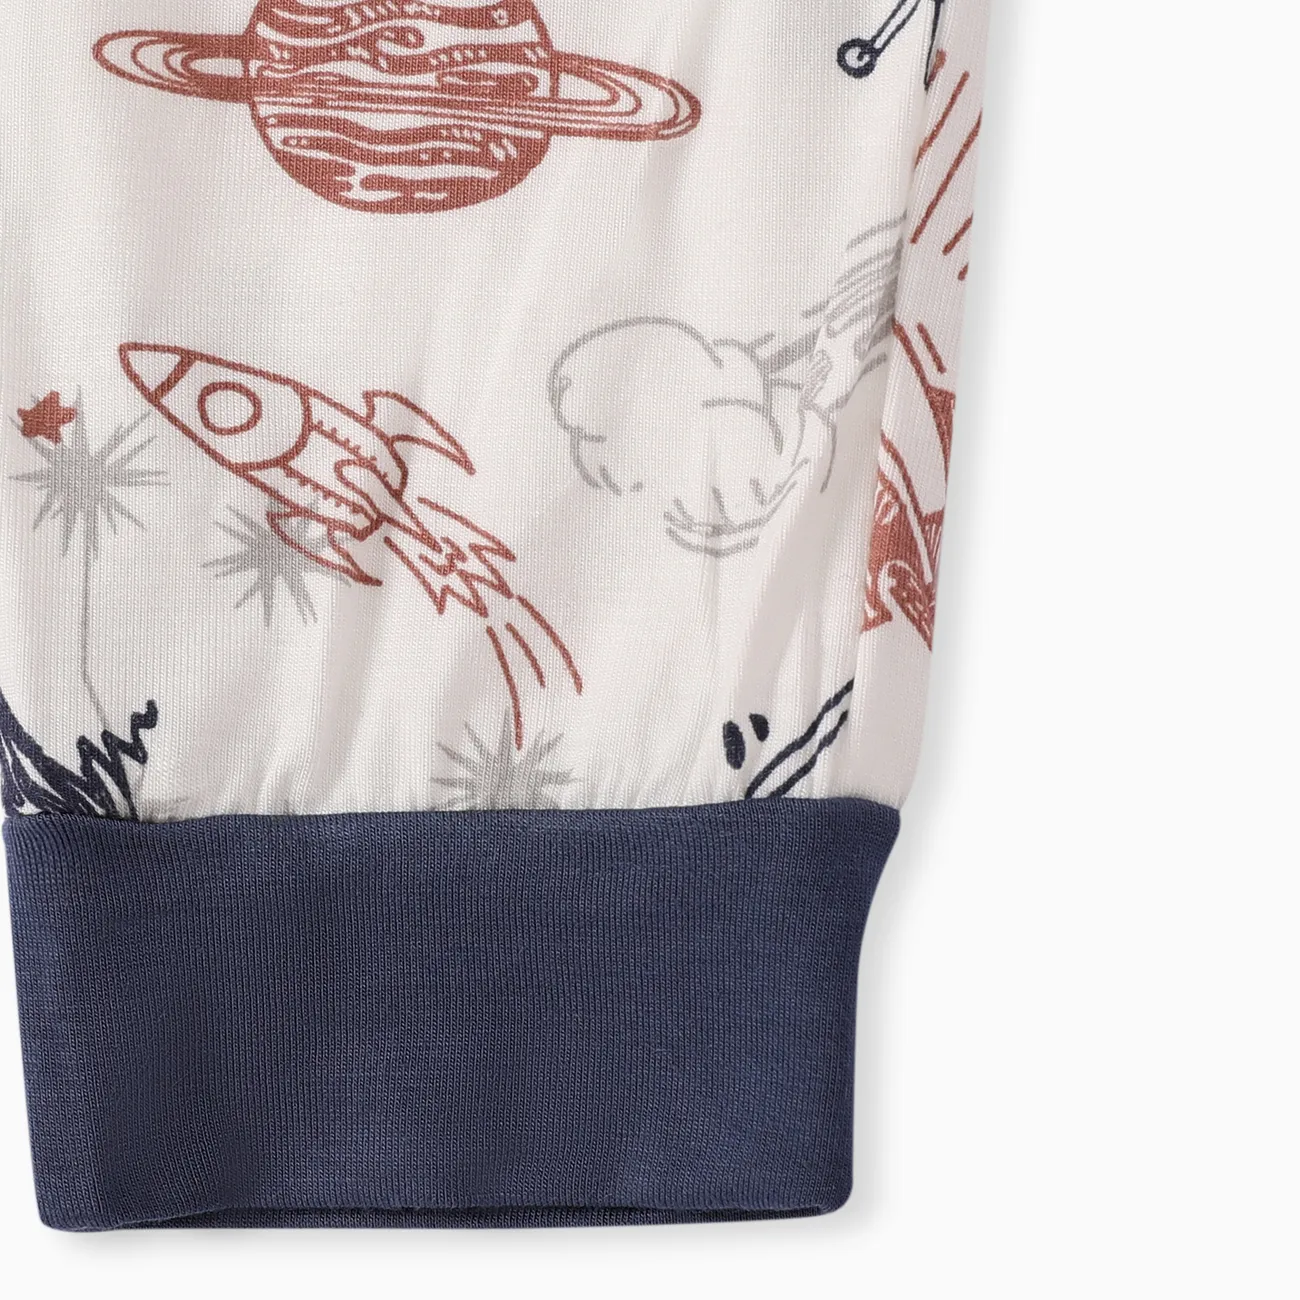 Kind Junge / Mädchen Kindlicher Hasendruck Bambus Stoff Enge Pyjamas Set nicht-gerade weiss big image 1